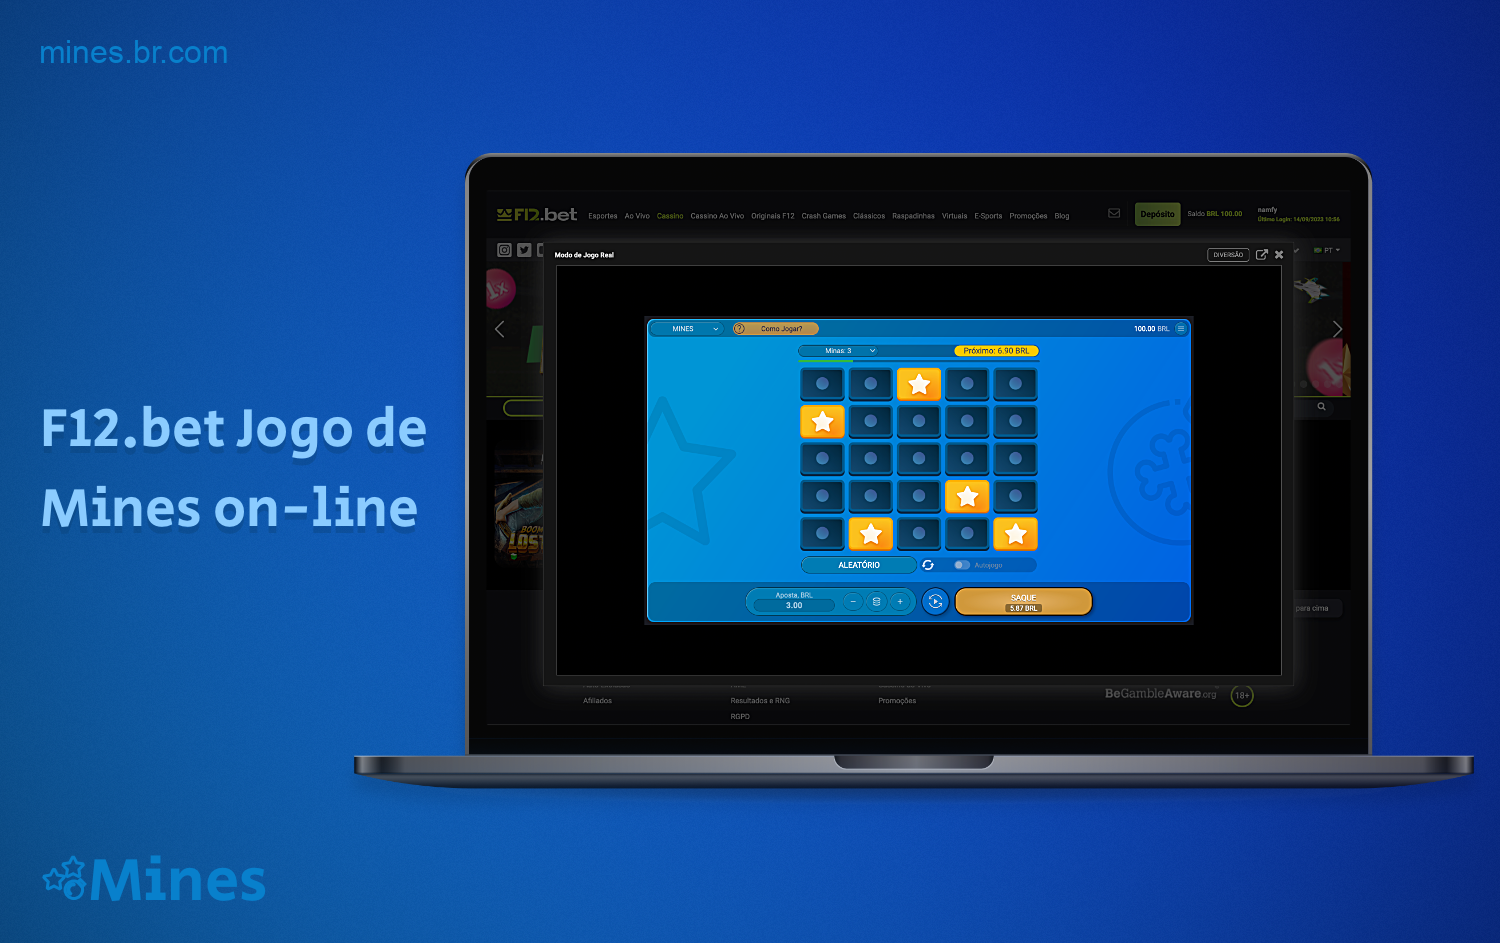 Usuários brasileiros podem jogar Mines no cassino online F12 Bet